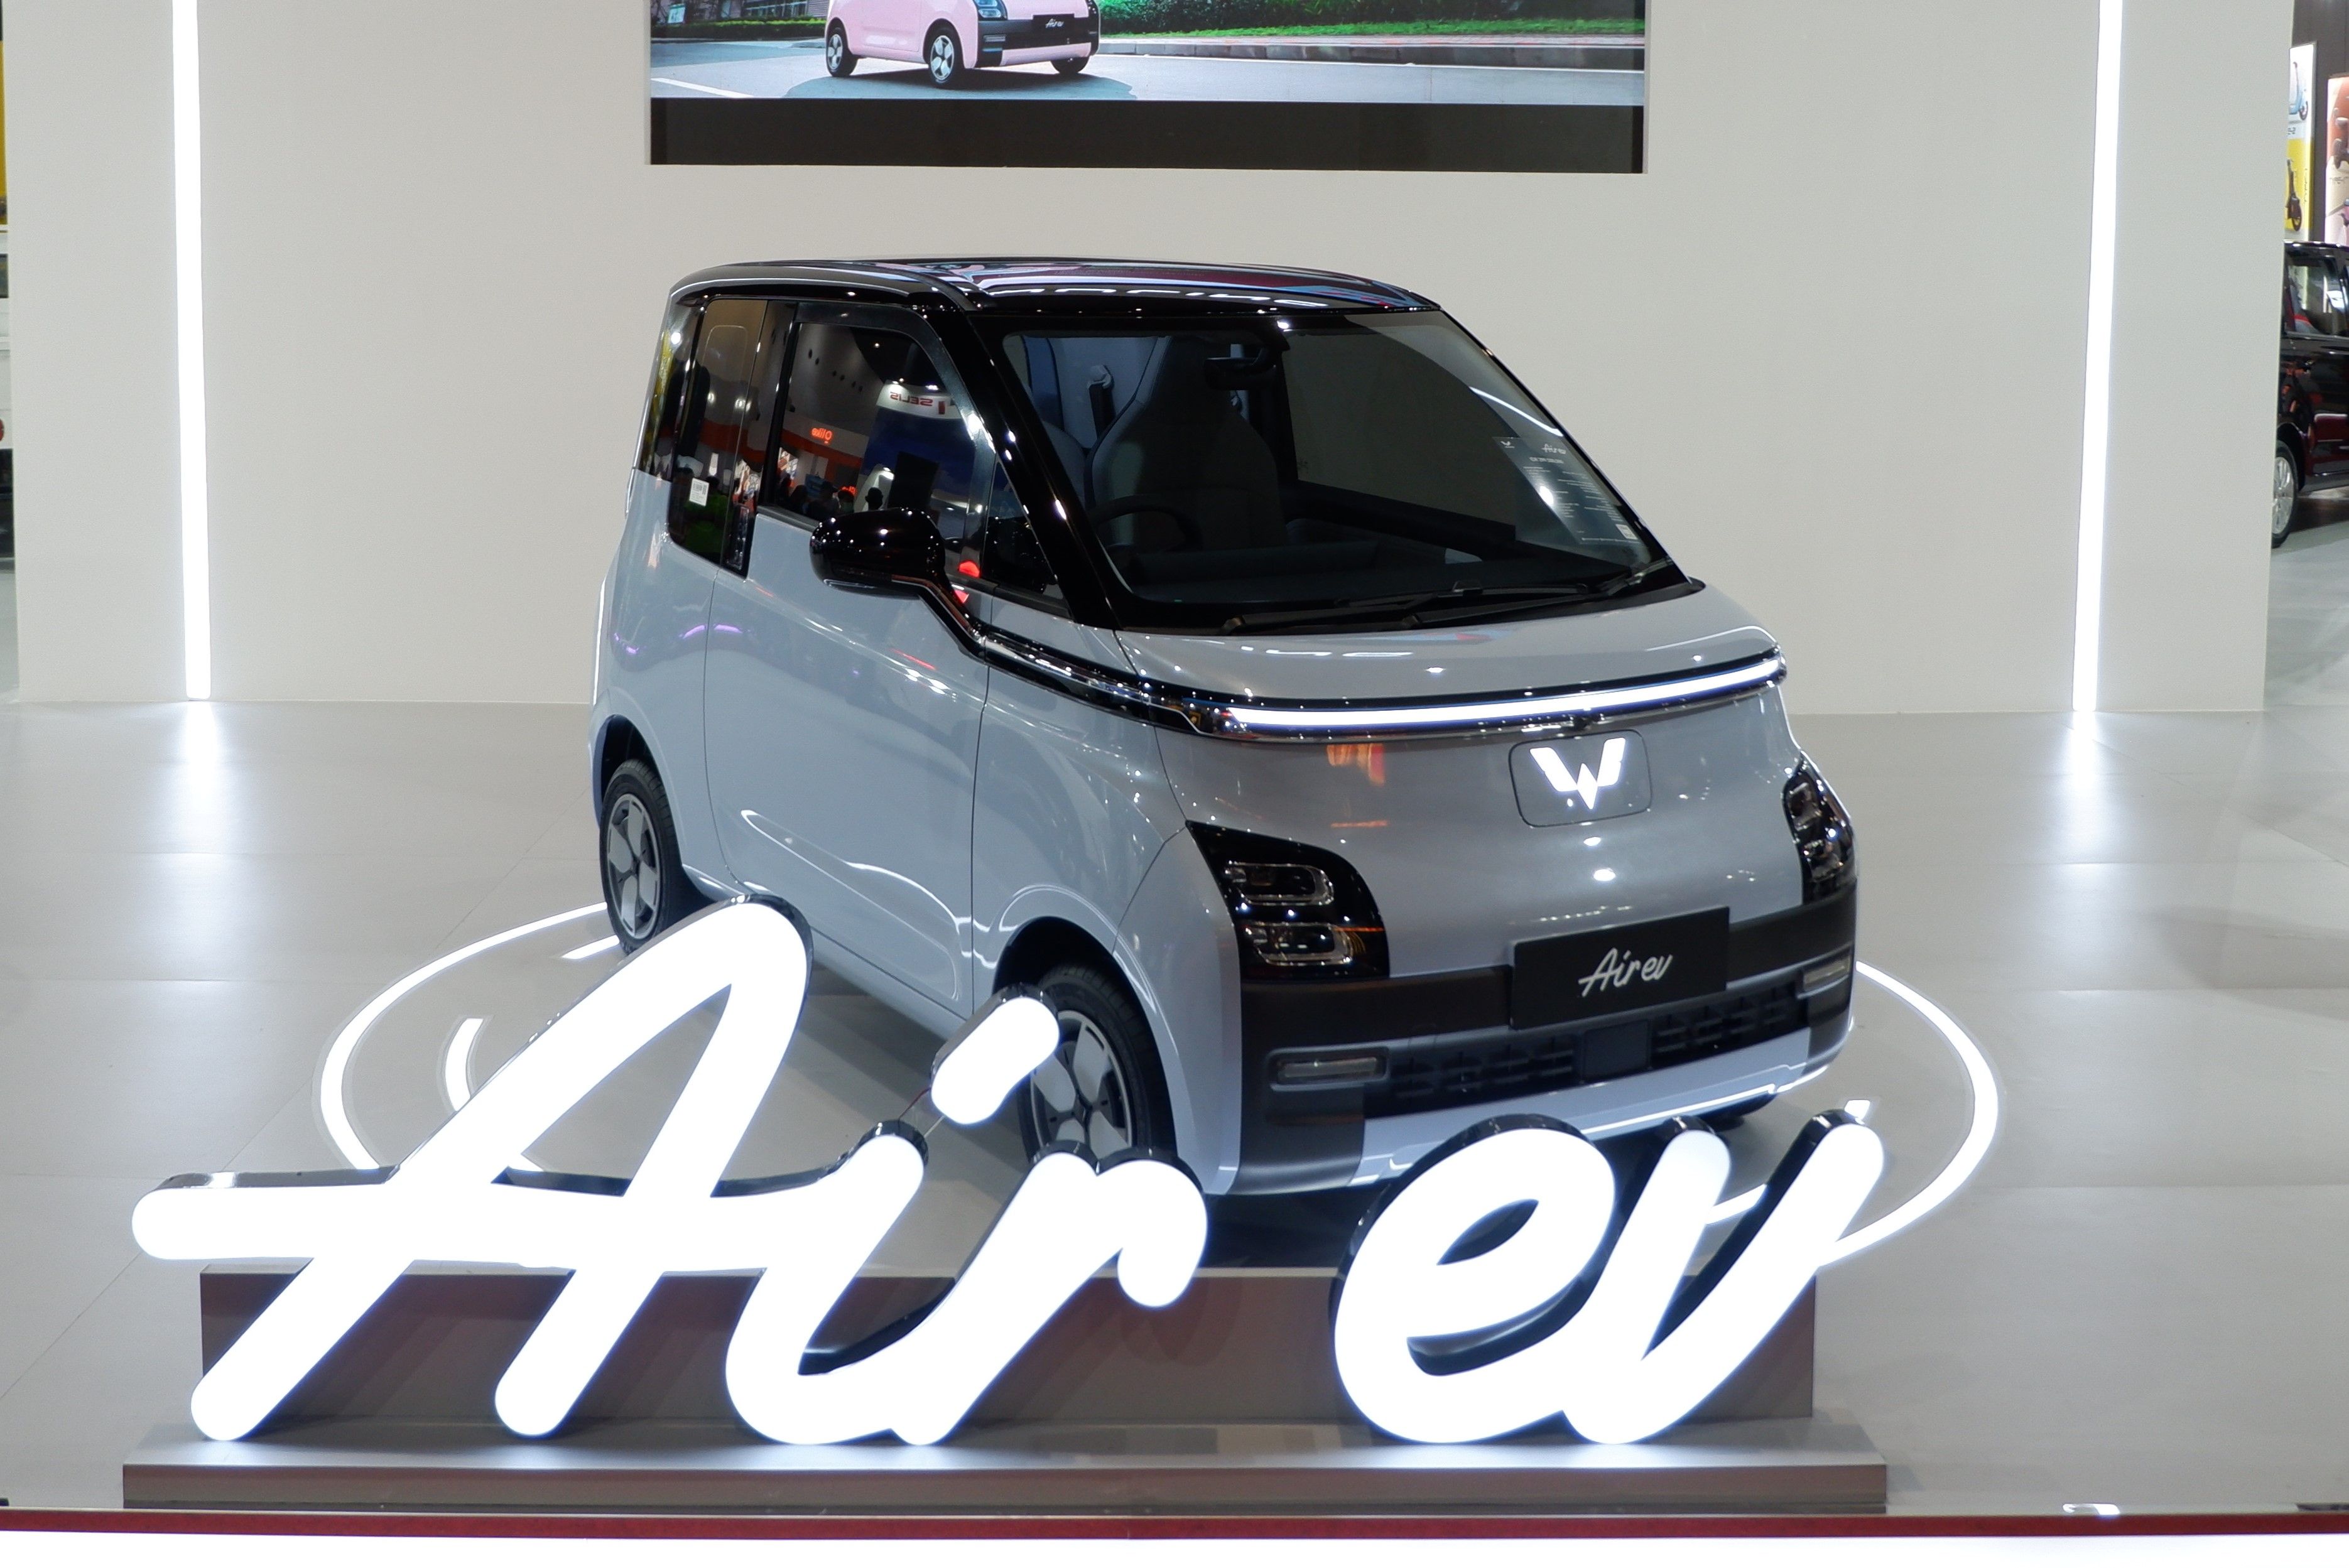 Di Jakarta Fair 2023, Wuling menampilkan Air ev yang merupakan kendaraan listrik pertama Wuling di Indonesia (Dok. Wuling Motors)